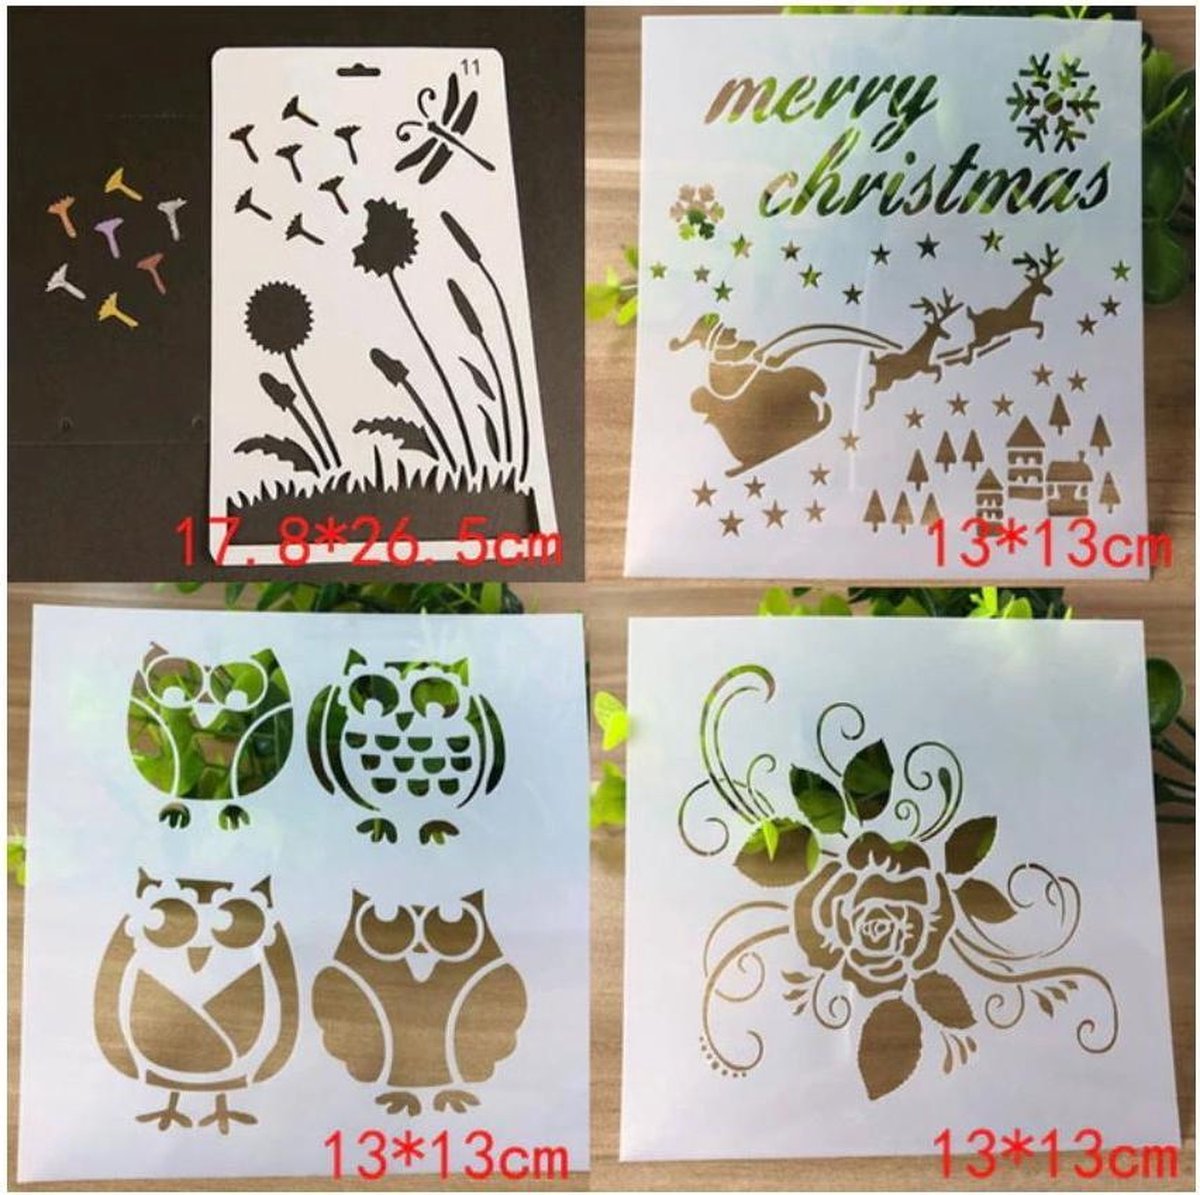 Bullet Journal Plastic Stencils - 4 stuks - Paardenbloem - Uilen - Hart - Kerst - Templates - Sjablonen - 17,8 x 26,5 cm & 3x 13 x 13 cm - Handlettering toolkit - Knutselen - Decoratie - Accessoires - kerst - christmas